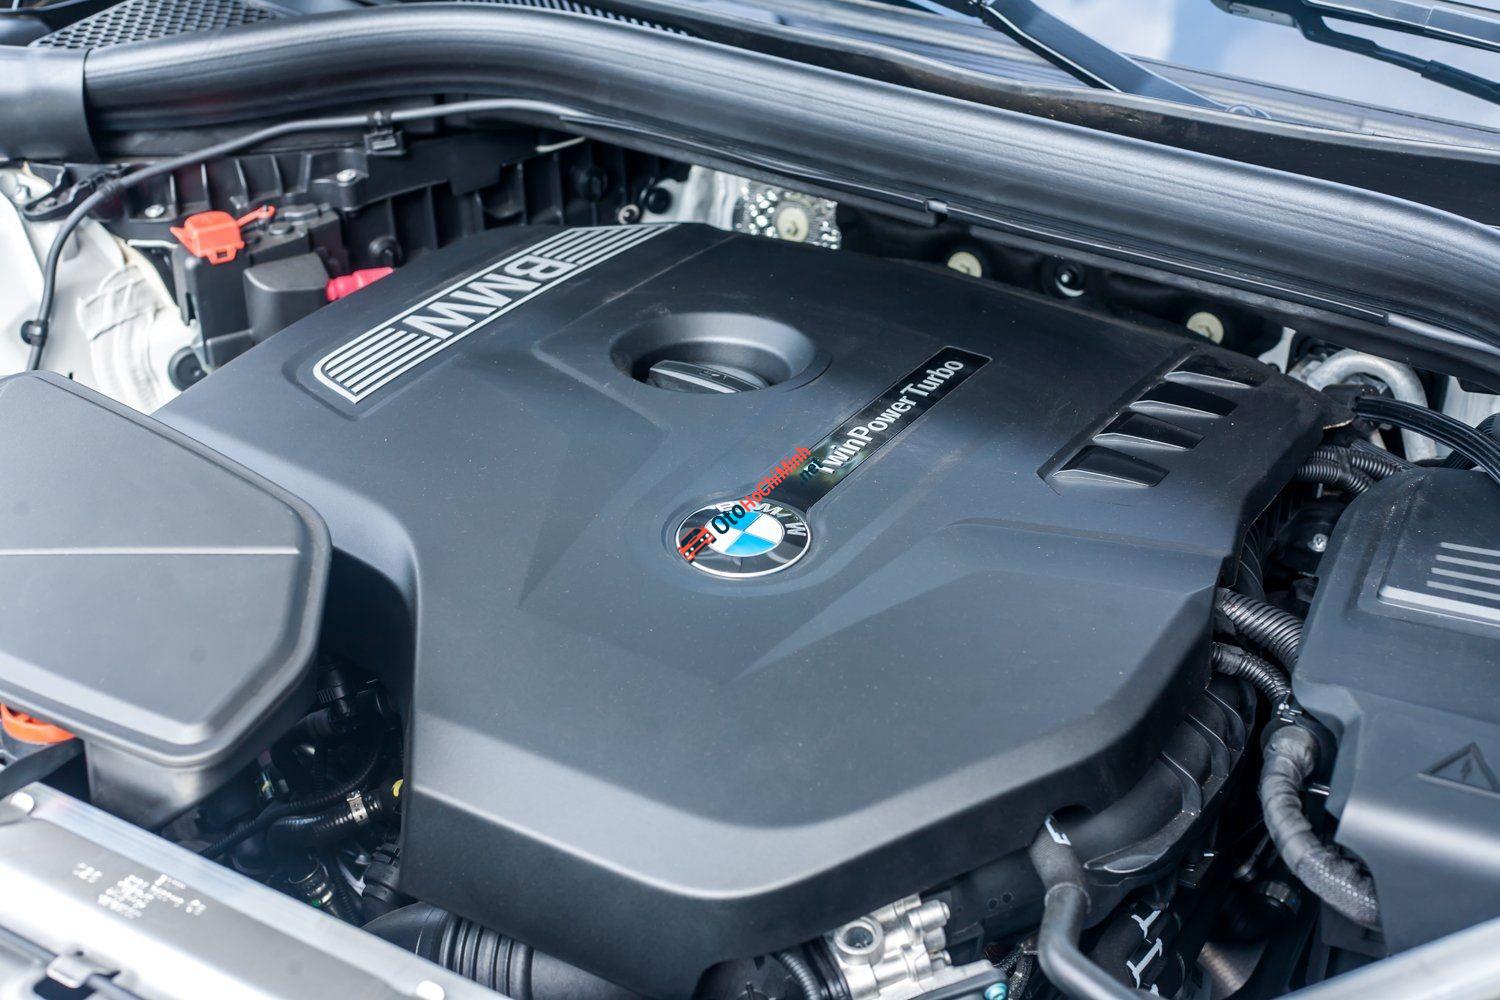 Bán xe BMW X3 xDrive20i năm sản xuất 2021 - thể hiện vẻ ngoài thể thao và năng động